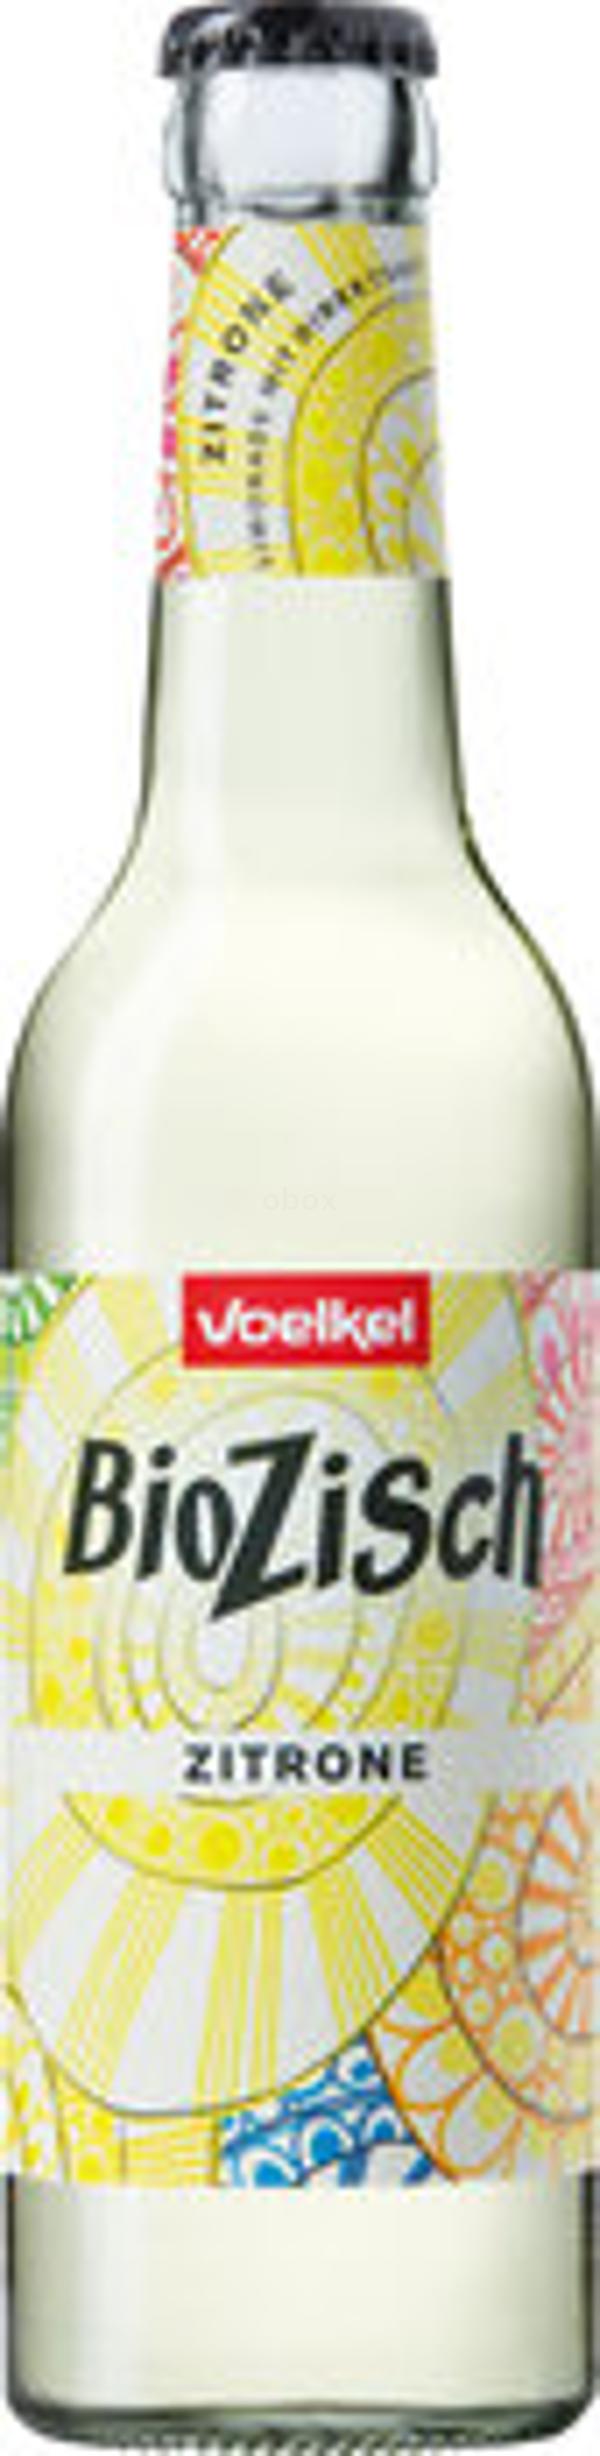 Produktfoto zu BioZisch Zitrone, 12x0,33 l